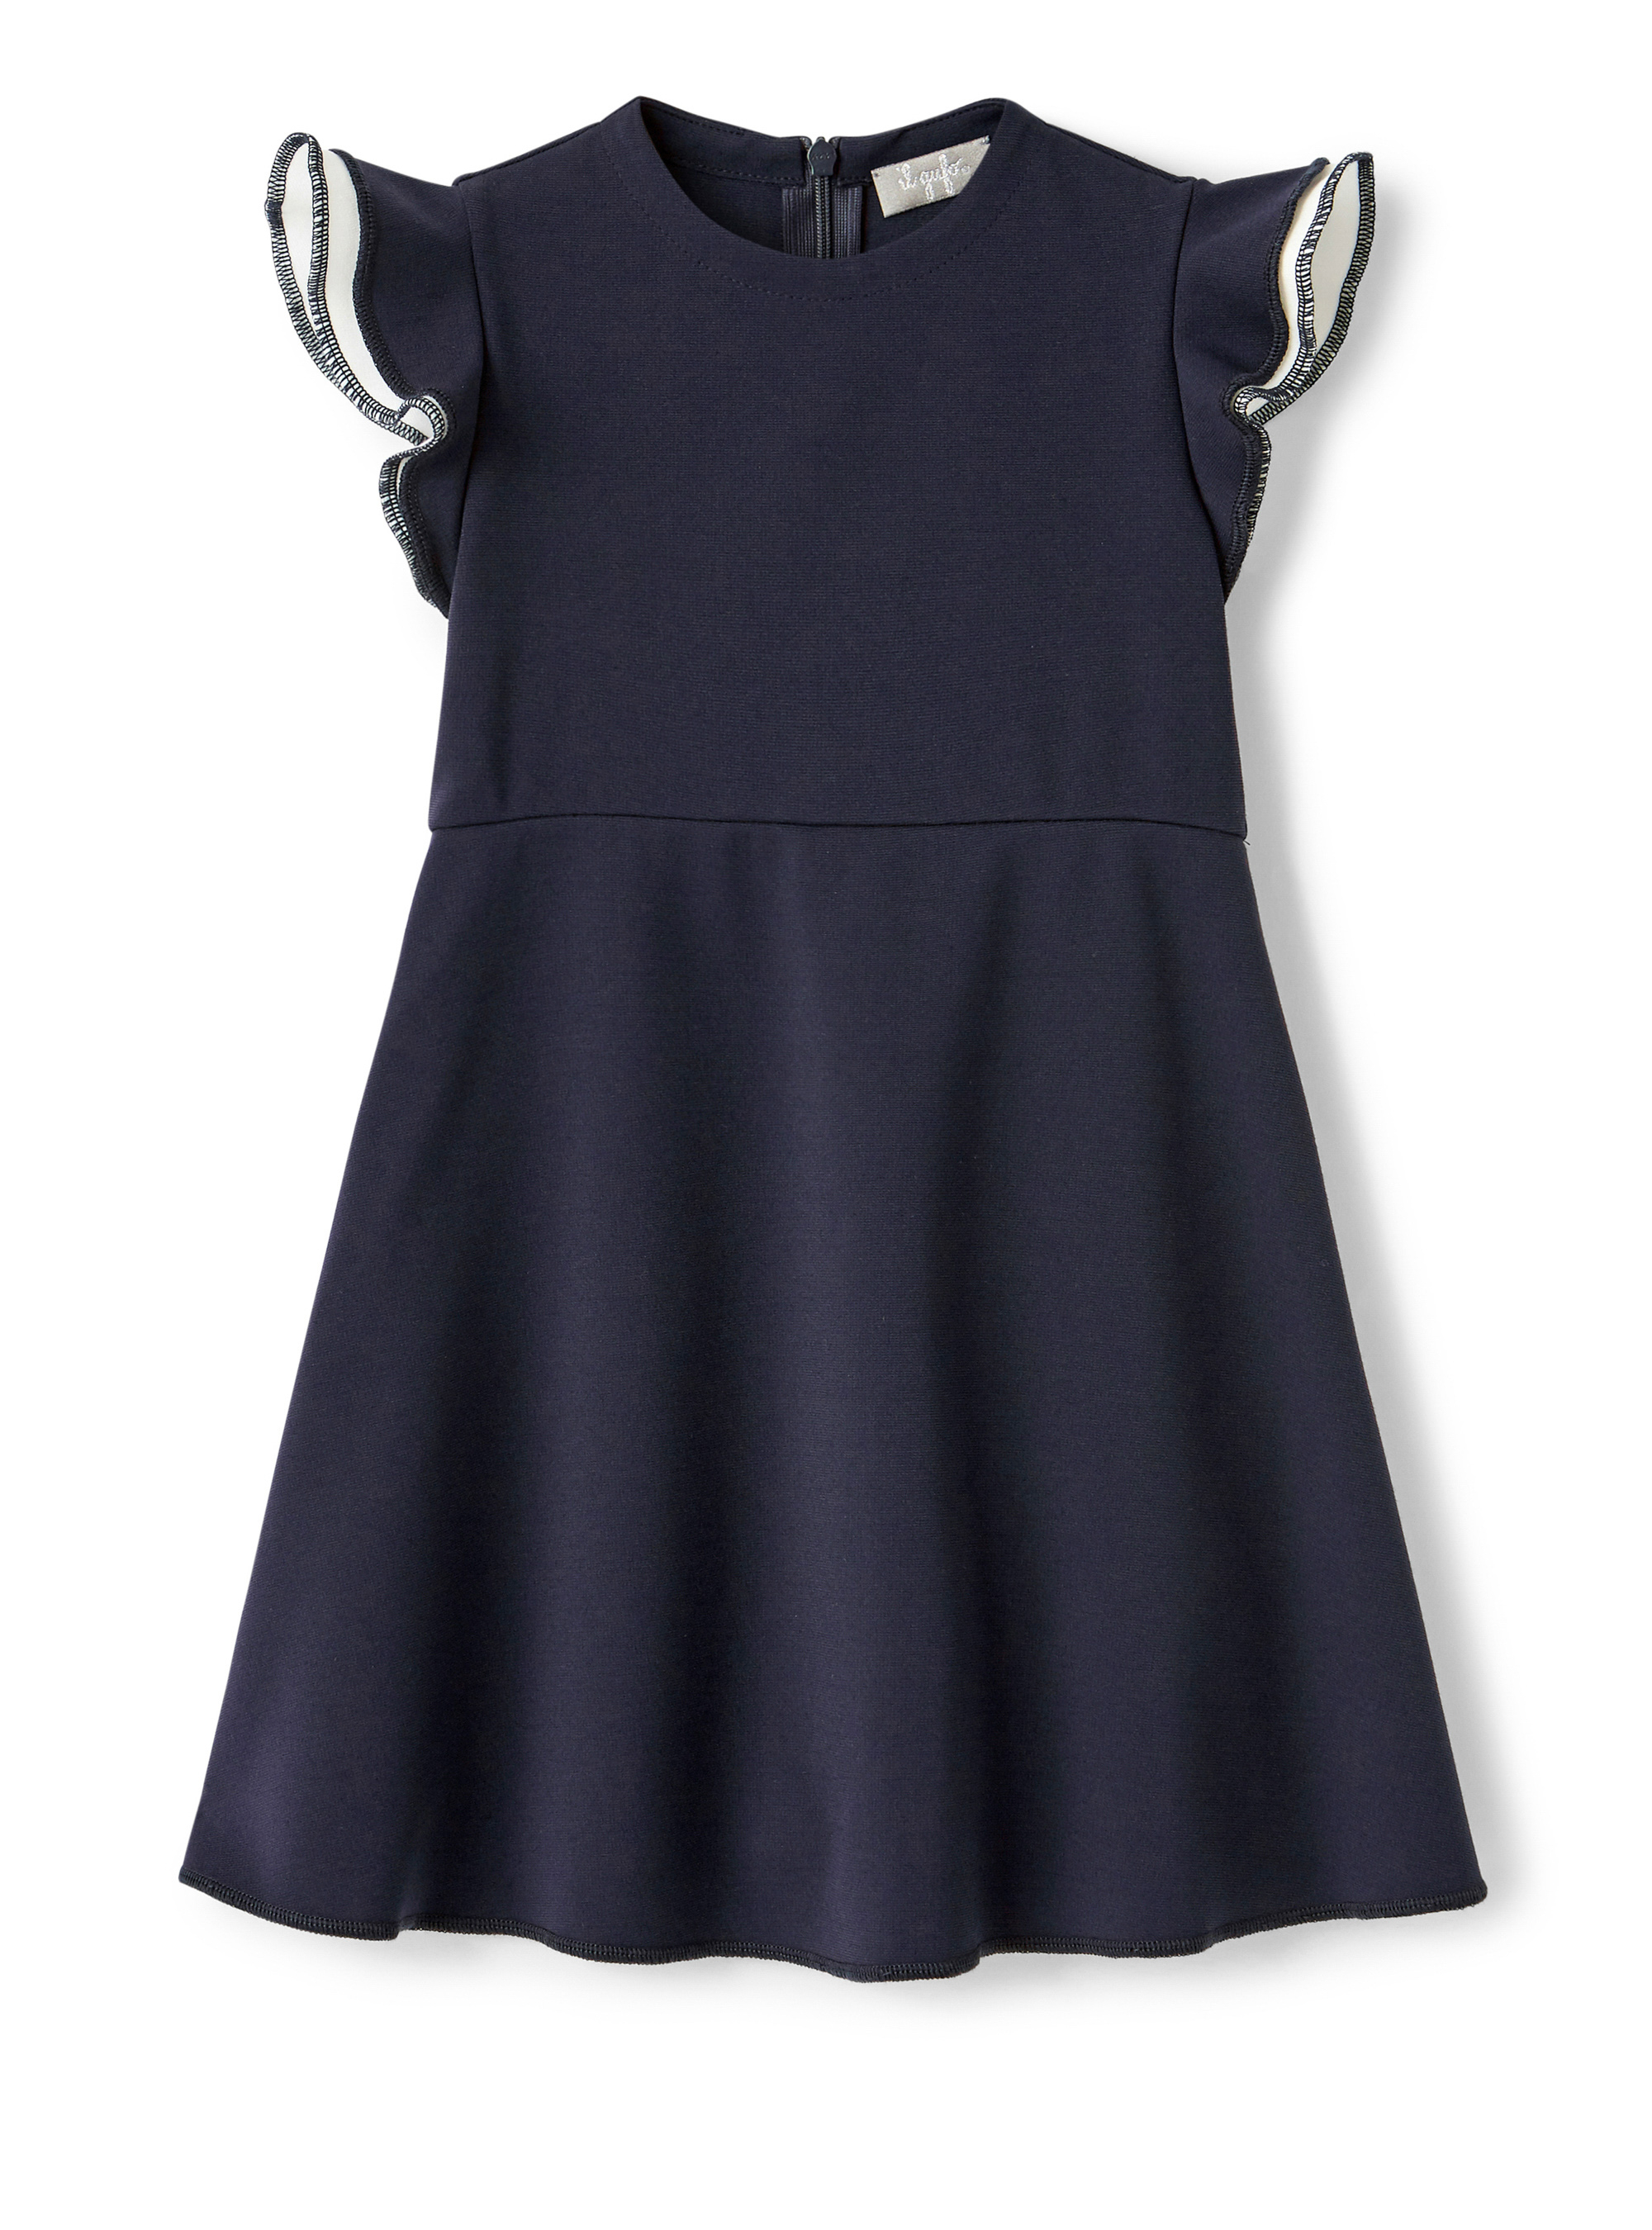 Blaues ärmelloses Kleid mit Rüschen - Blau | Il Gufo